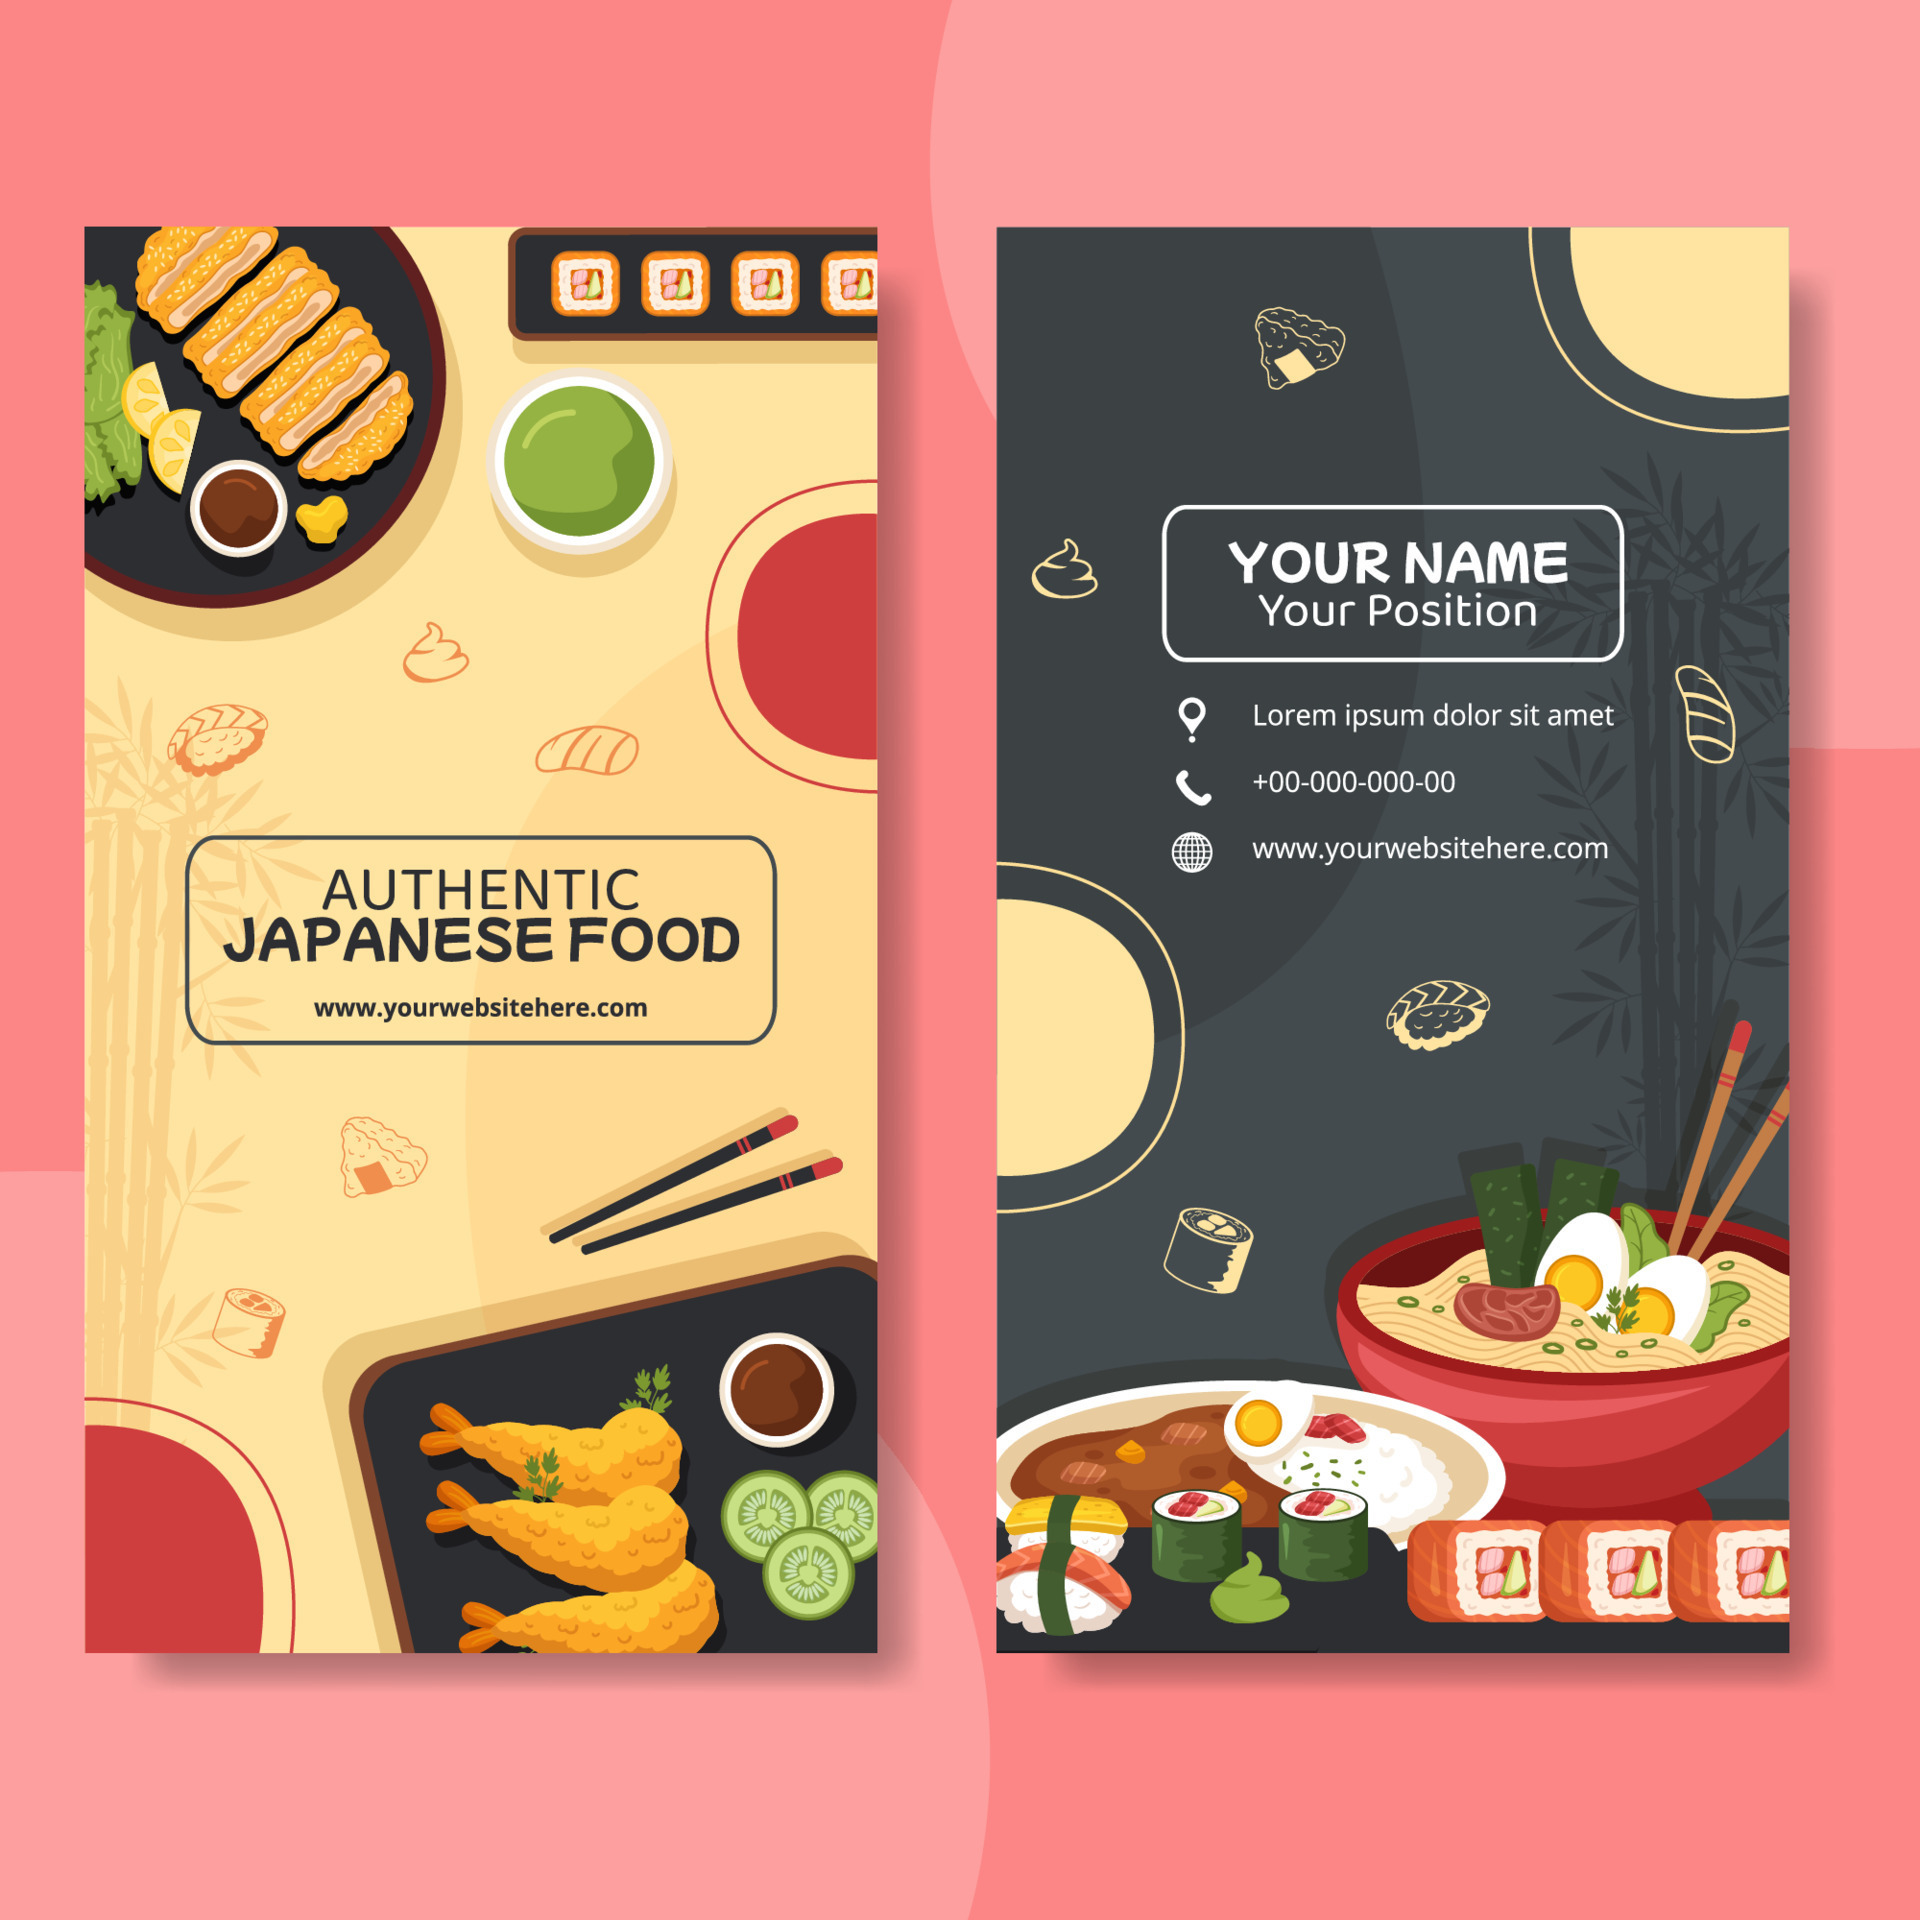 Đồ ăn Nhật Bản là nơi bạn có thể tìm thấy những món ăn phong phú và đa dạng nhất. Chúng tôi mang đến cho bạn những món ăn Nhật Bản chất lượng cao nhất, với hương vị độc đáo và nguyên liệu được chọn lọc cẩn thận. Quý khách sẽ thực sự thưởng thức được vị những món ăn tuyệt vời của chúng tôi. 